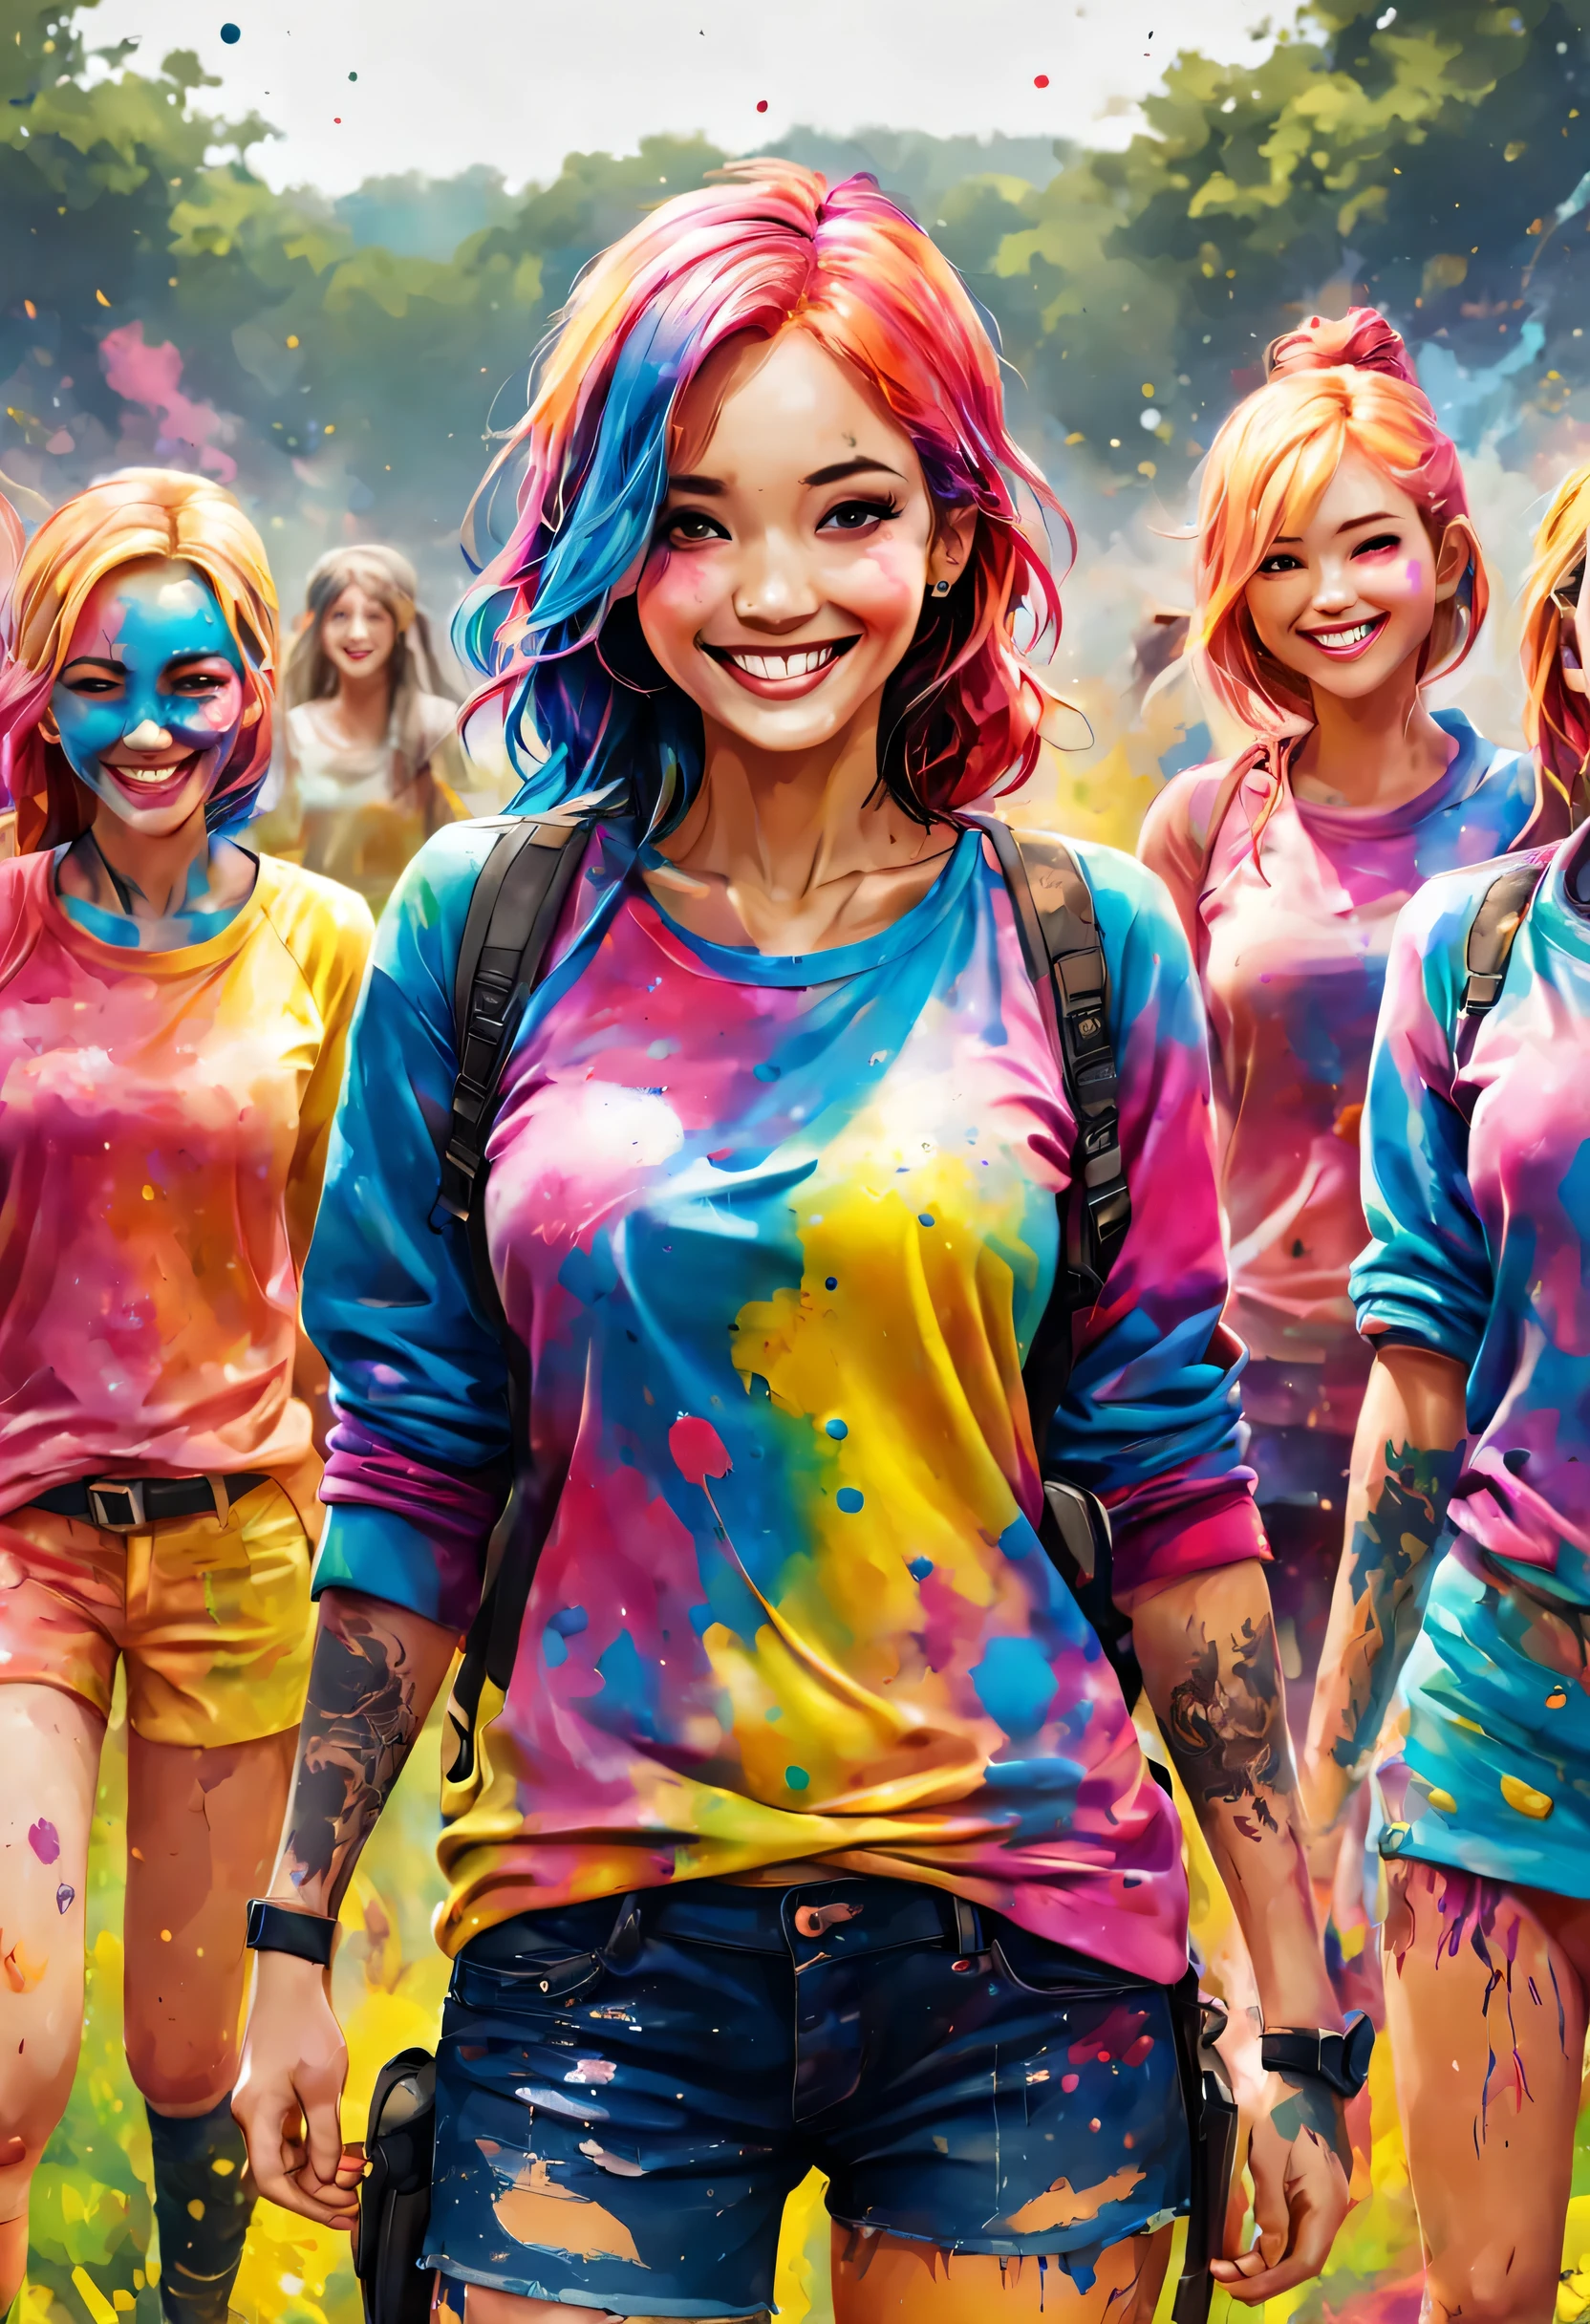 잉크 튄 자국, (온몸에 잉크를 묻힌 소녀들), 캐주얼 의류, (다채로운 잉크), 웃다, 서바이벌 게임 분야에서는